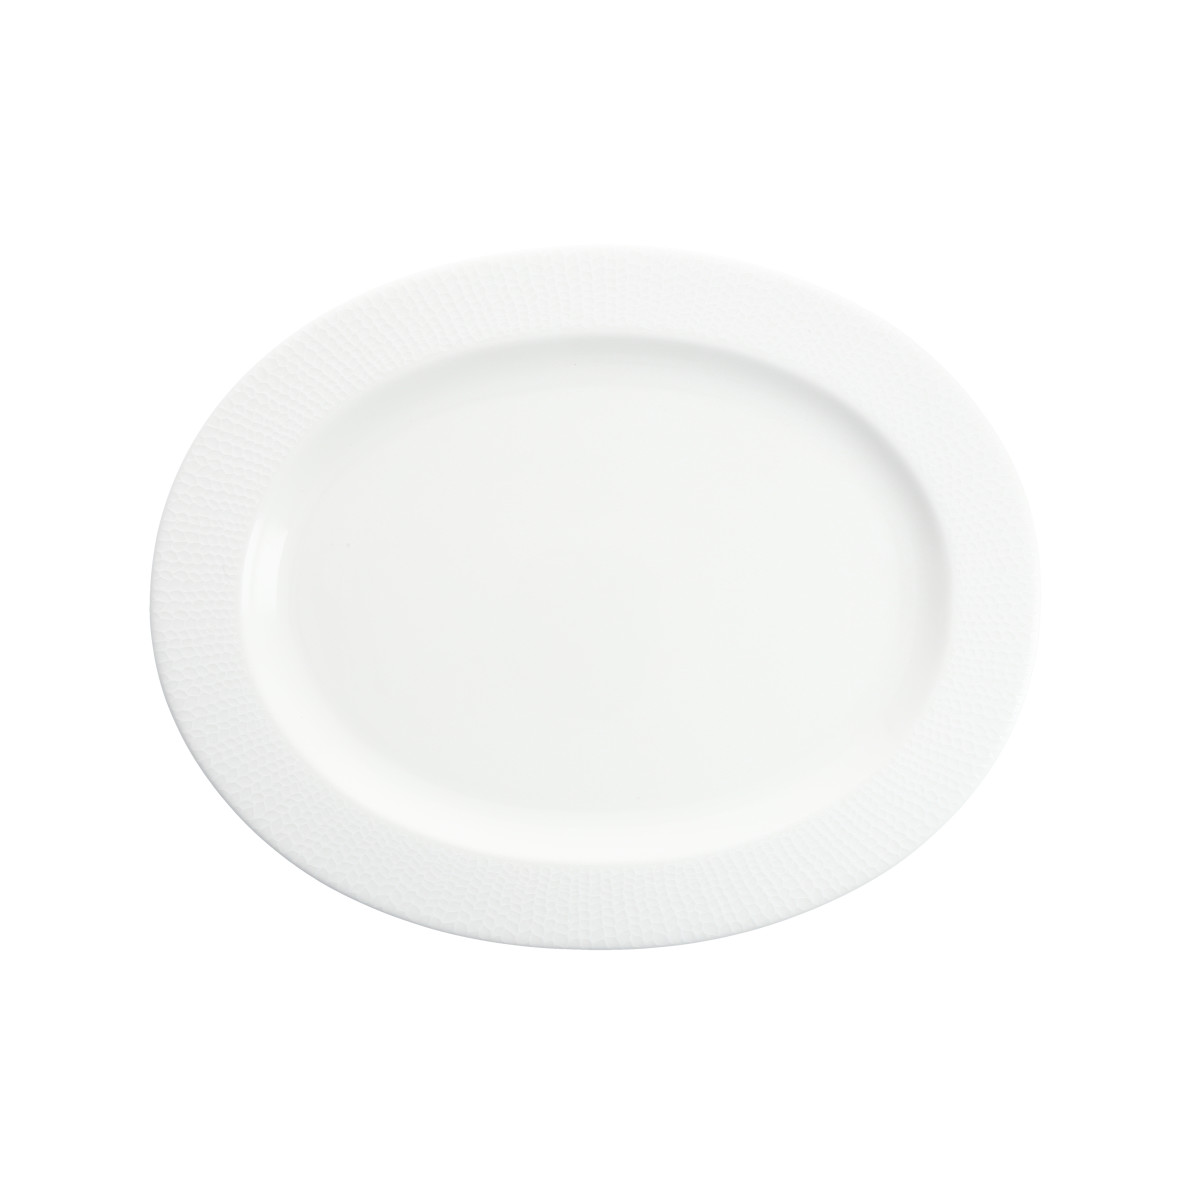 Amanda 14" Oval Platter, White